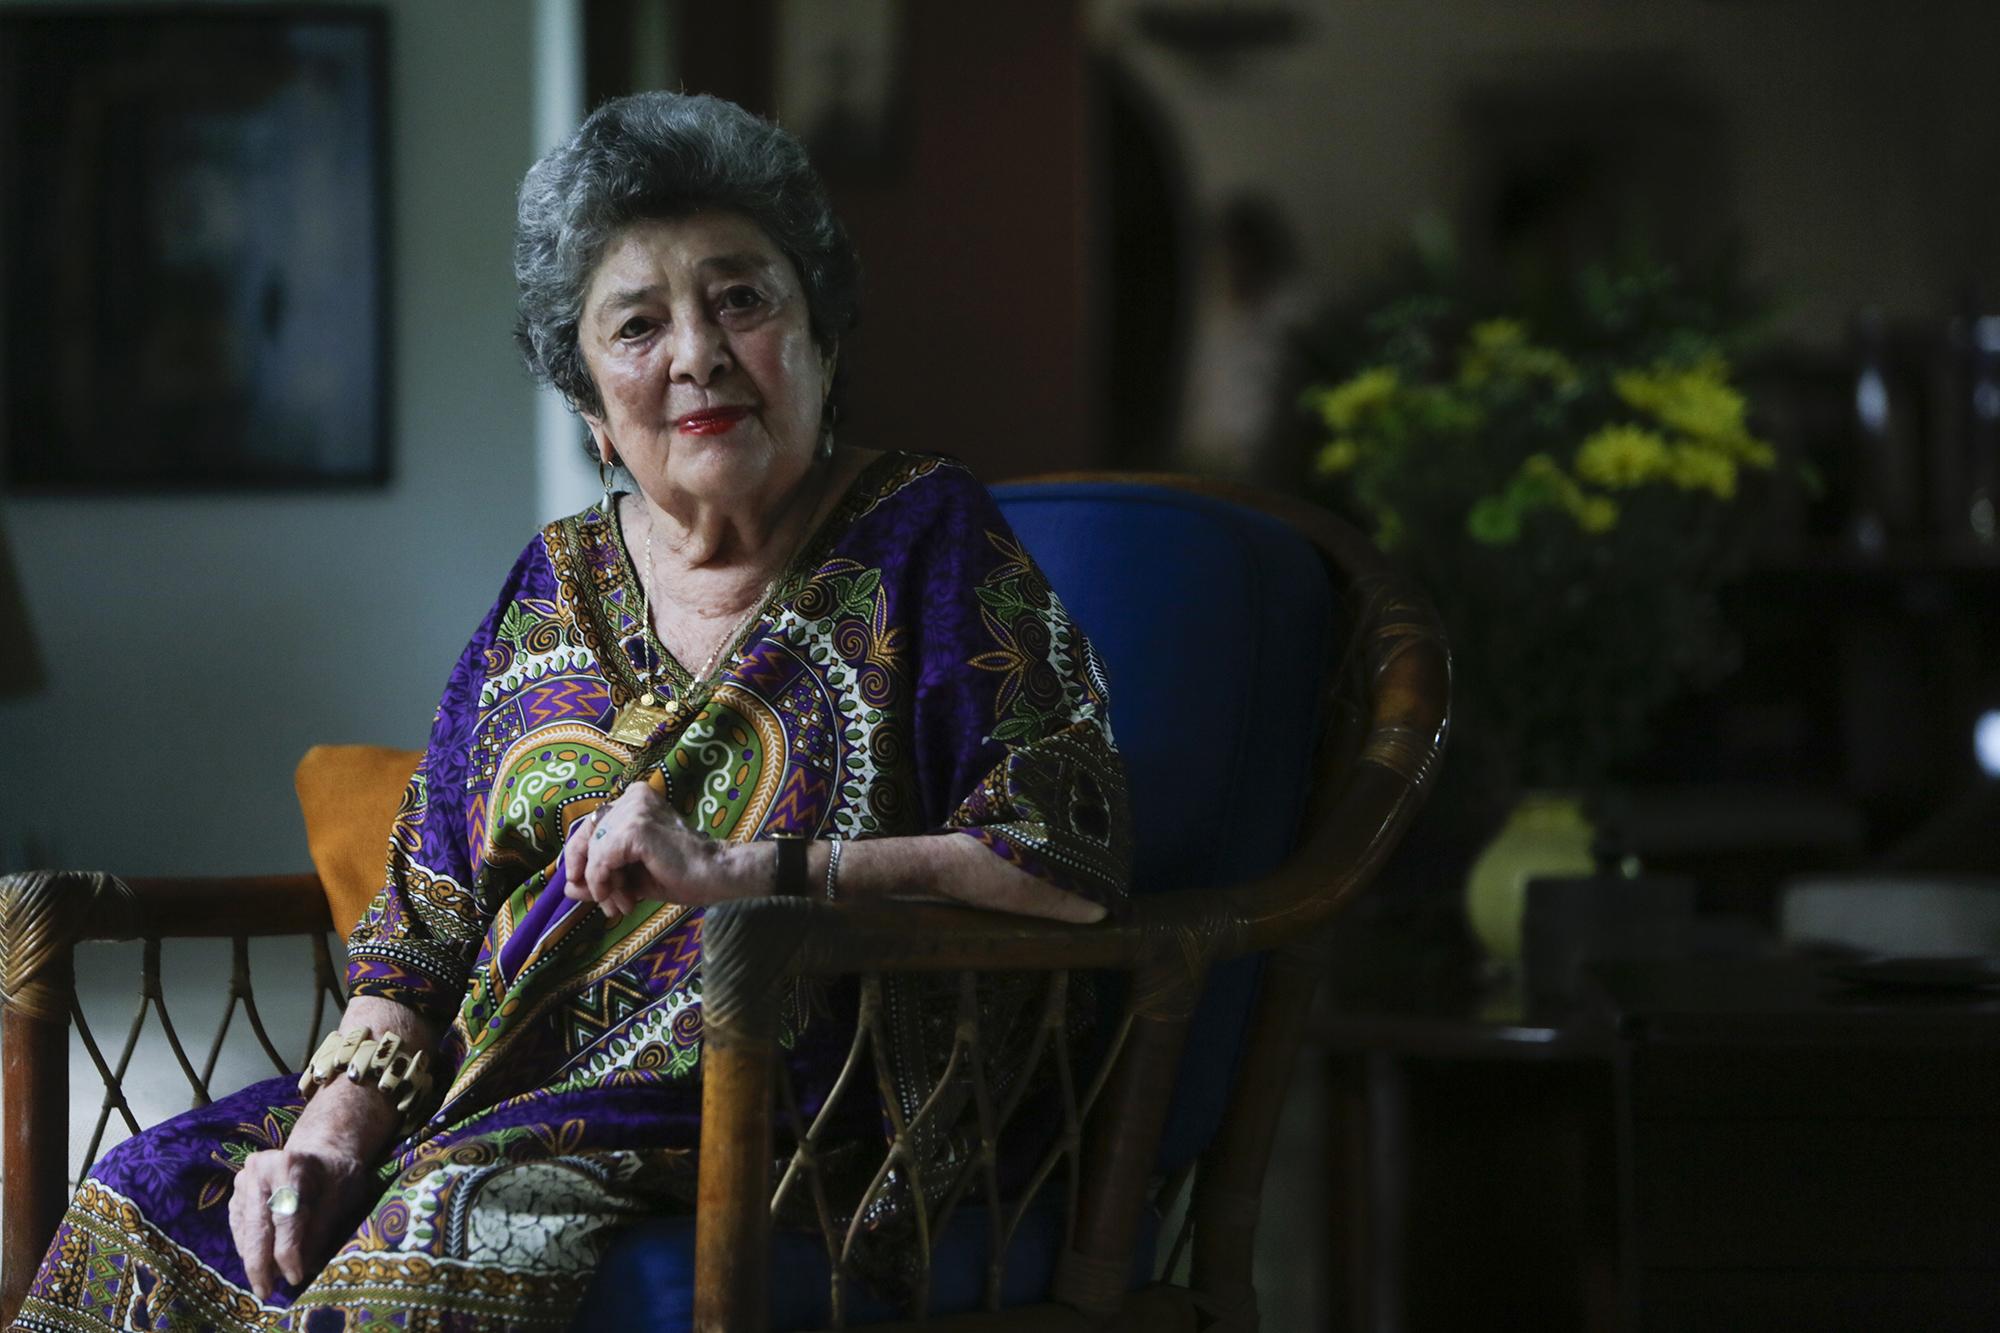 Claribel Alegría es entrevistada en su residencia el 18 de mayo, luego de ser anunciada como la ganadora de Premio Reina Sofía de Poesía Iberoamericana. AFP PHOTO / INTI OCON